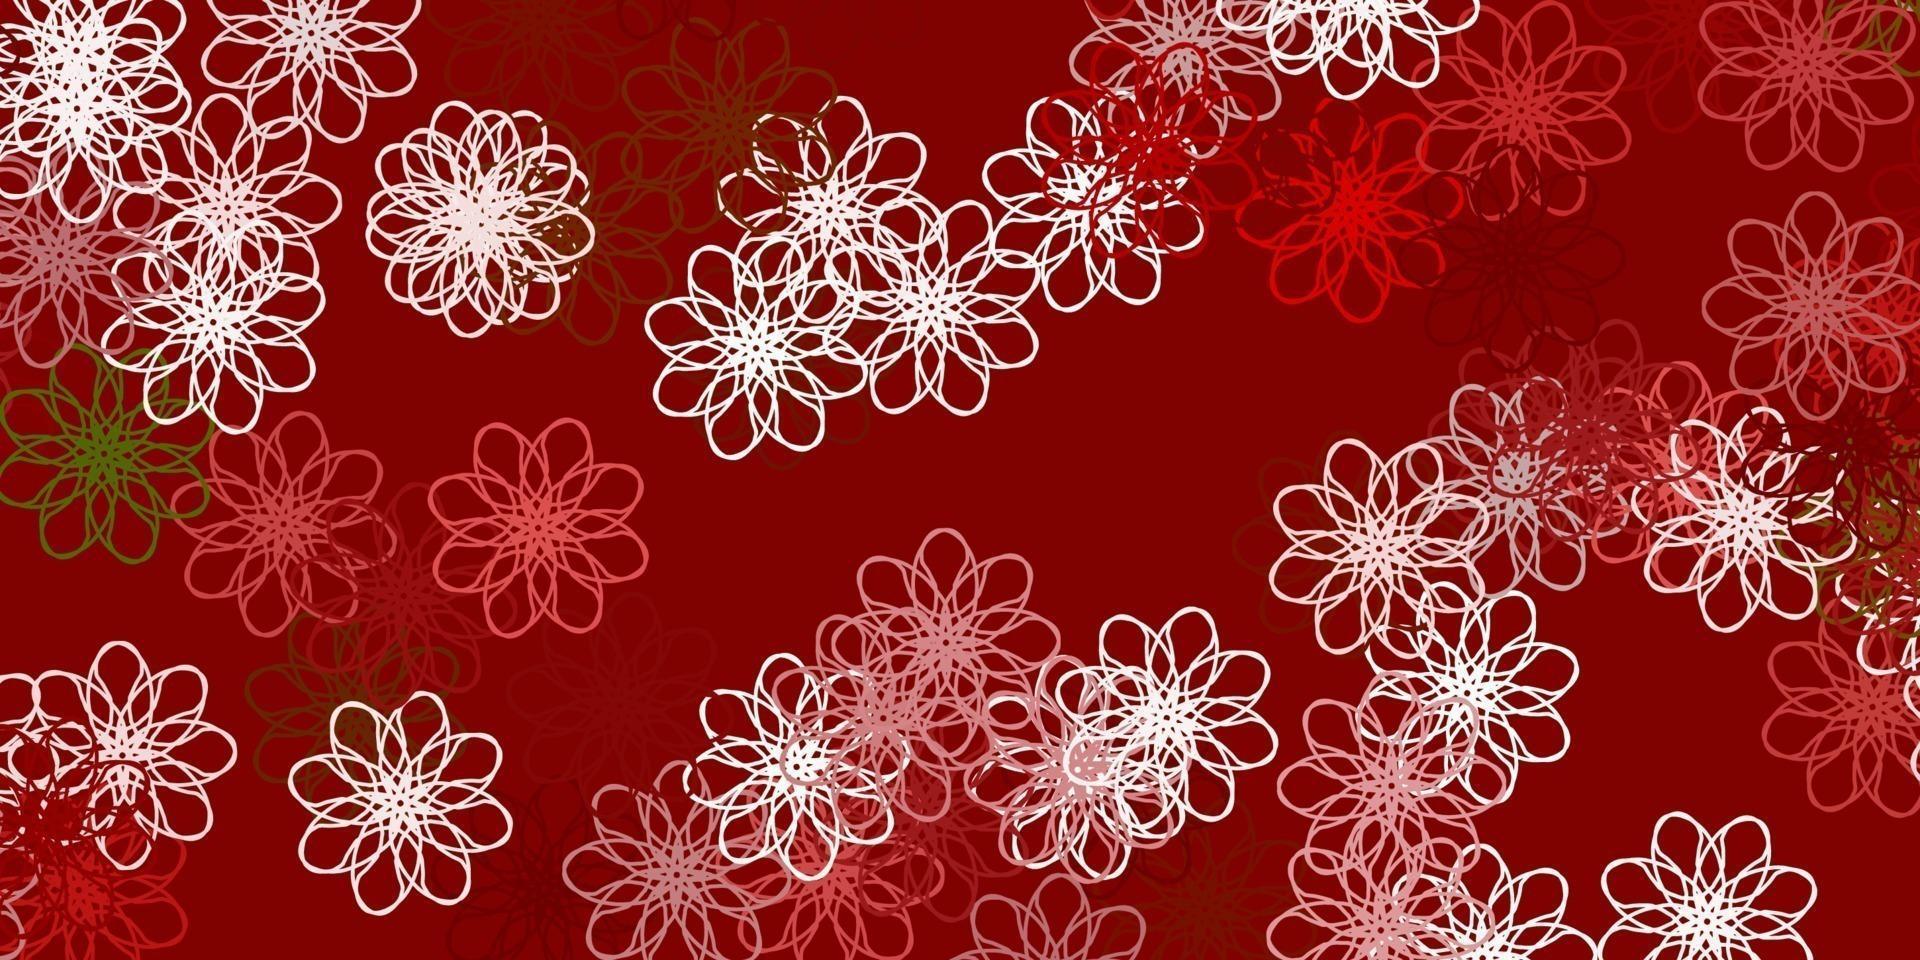 modello doodle vettoriale verde chiaro, rosso con fiori.